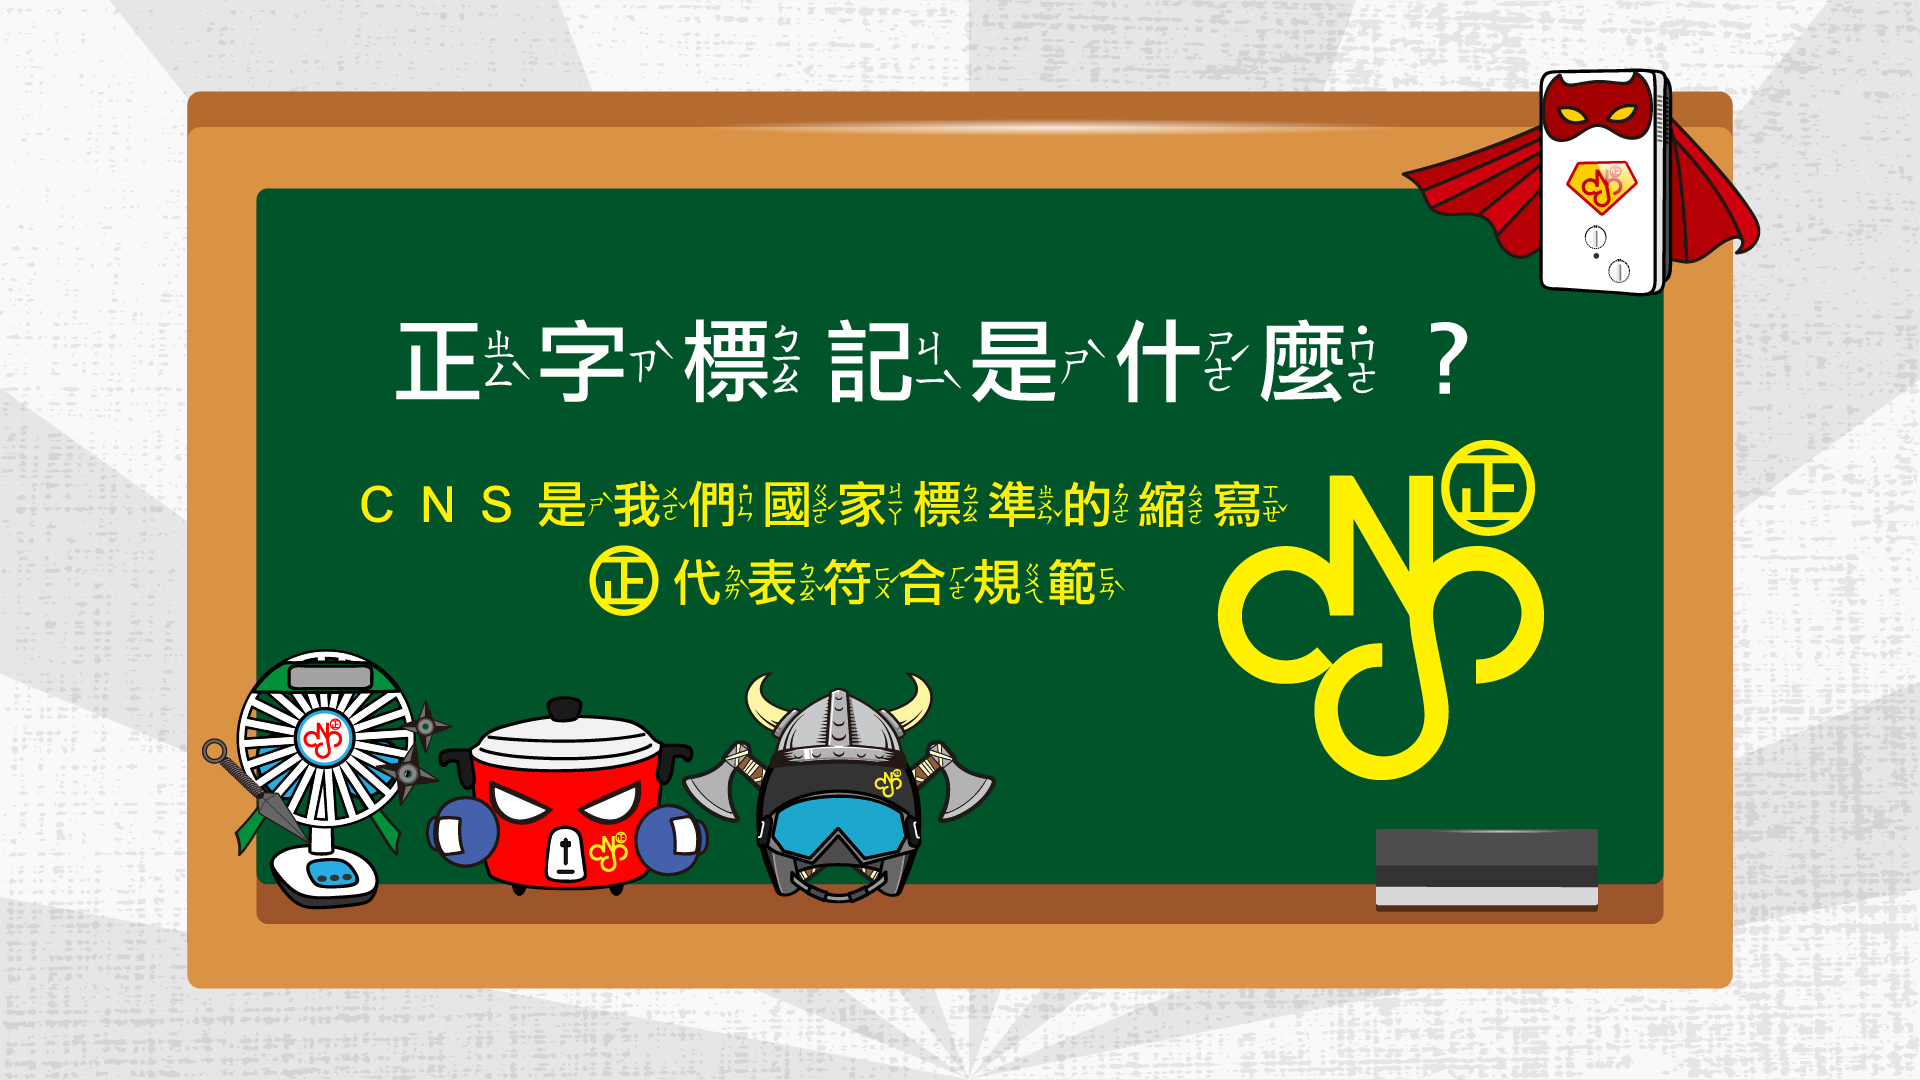 正字標記是什麼？CNS是我們國家標準的縮寫，㊣代表符合規範。